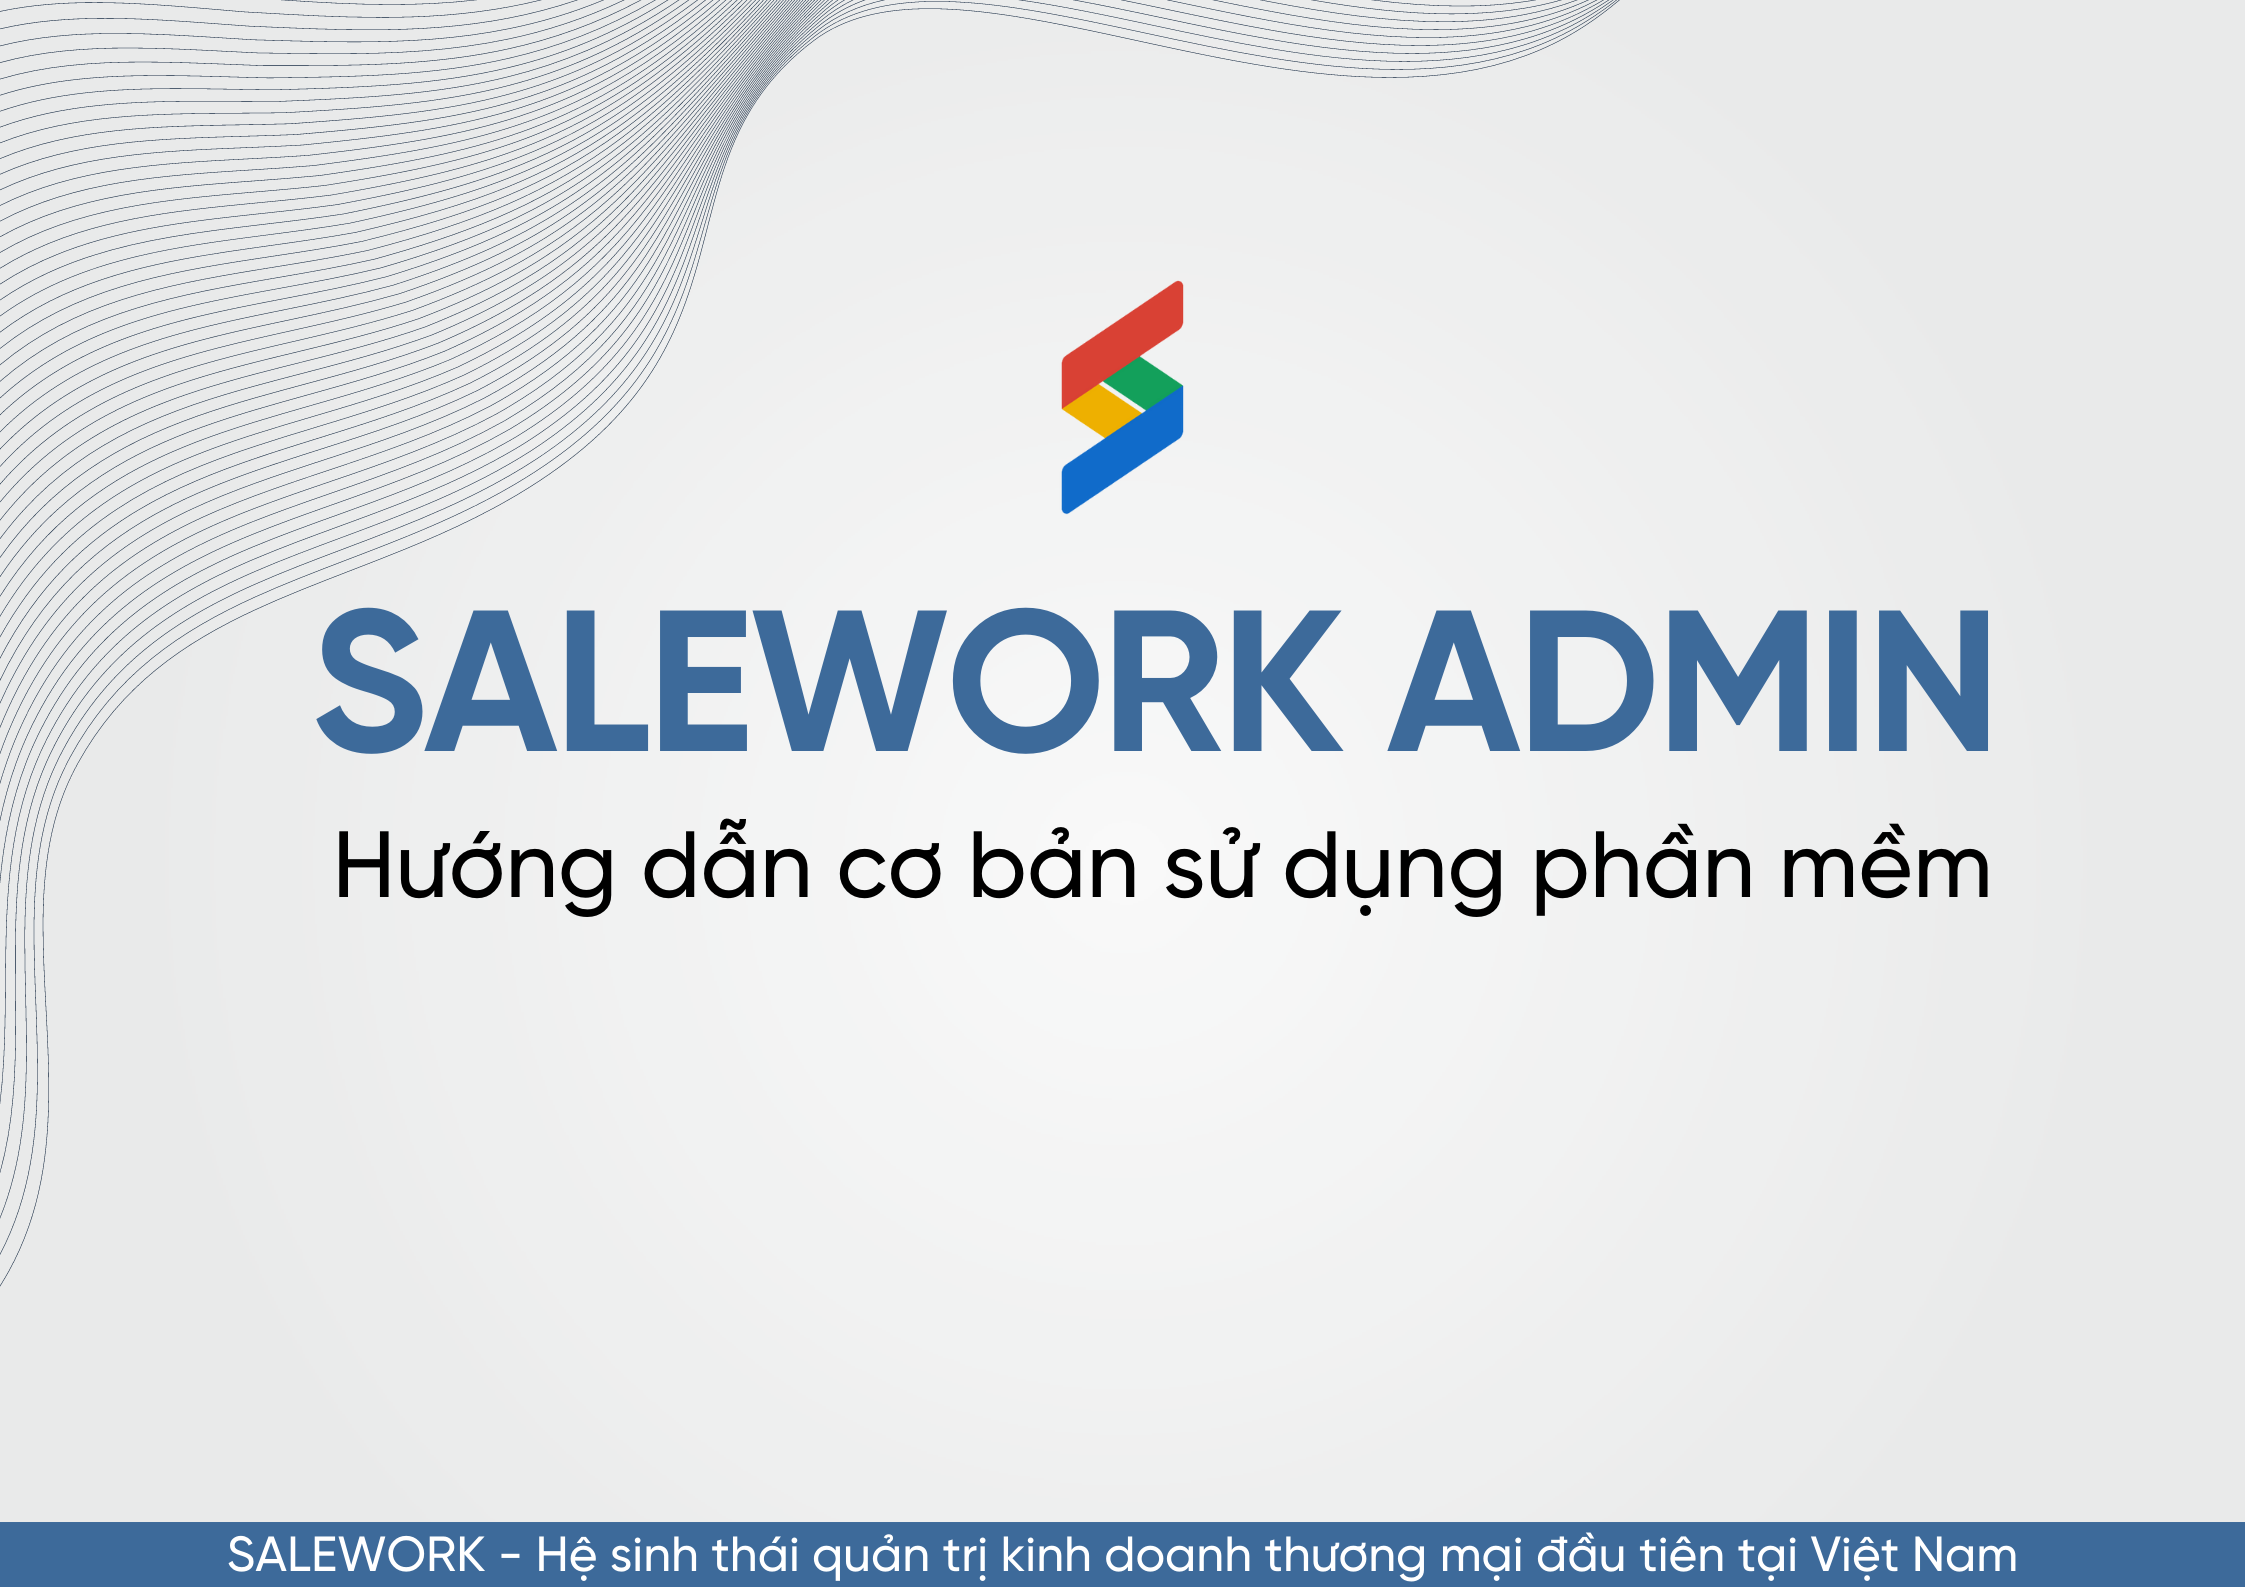 Salework Admin là gì? Hướng dẫn cơ bản sử dụng Salework Admin - 10